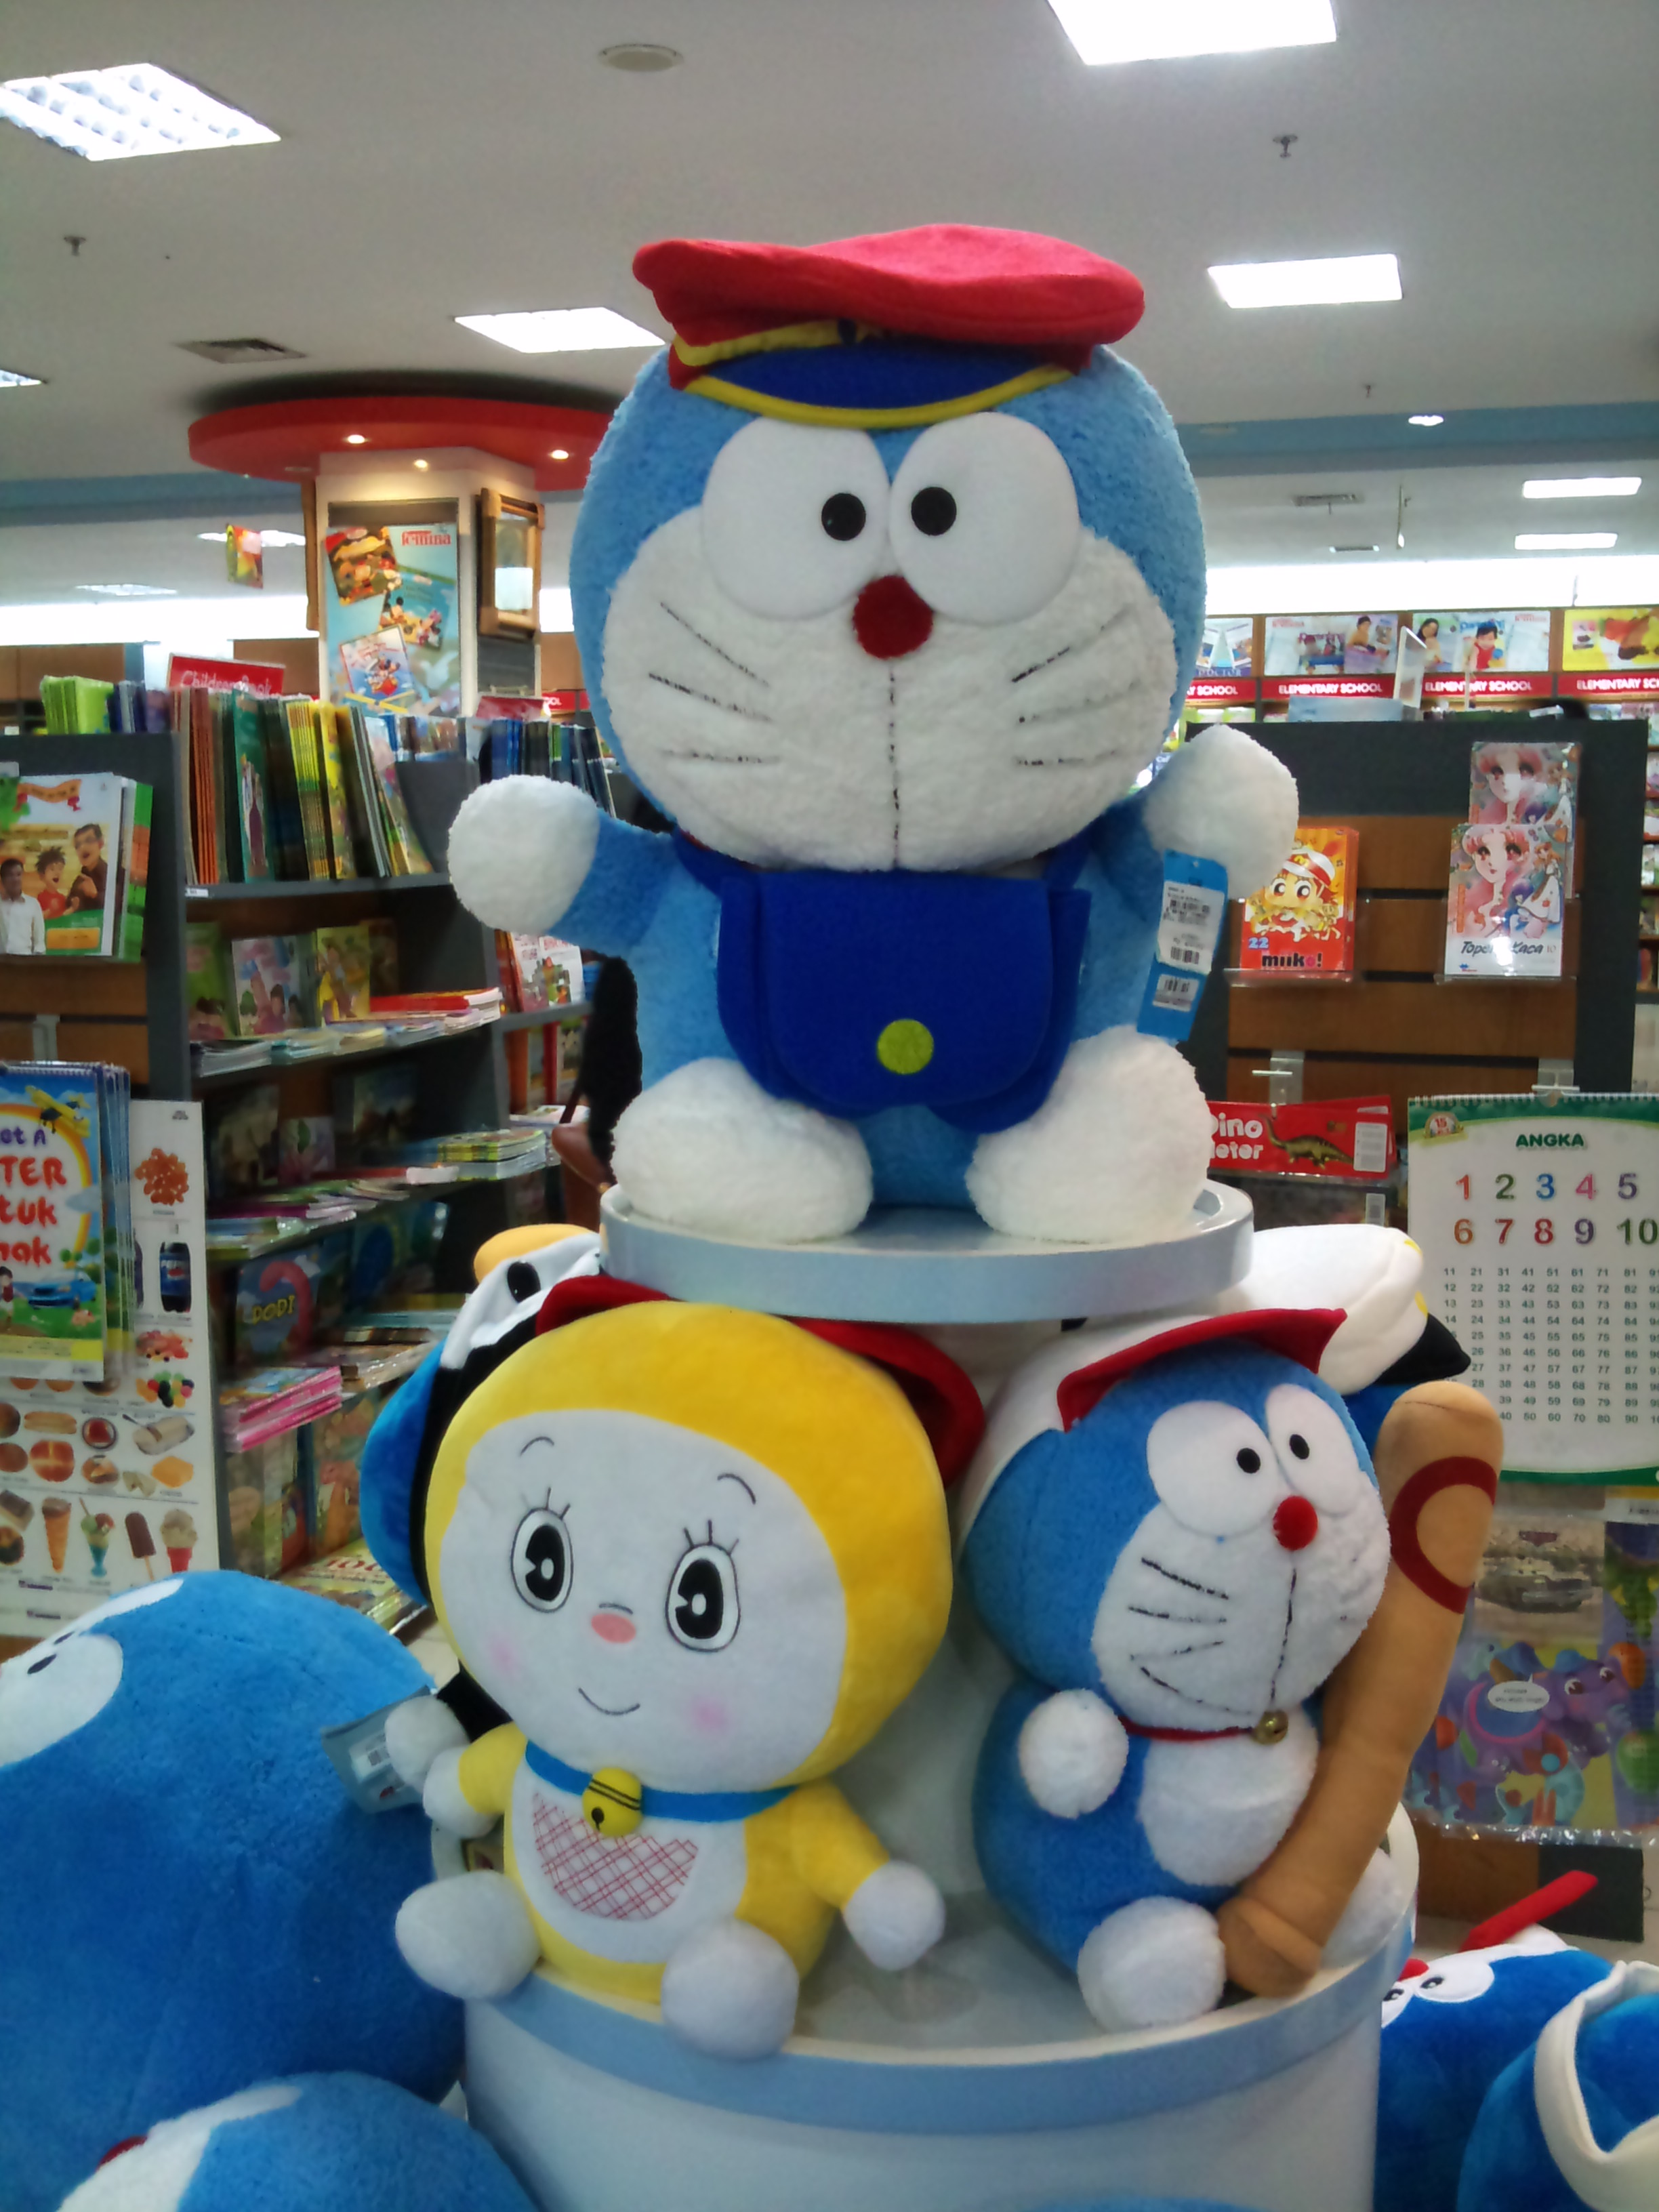 Gambar Lucu Boneka Doraemon Terlengkap Display Picture Keren